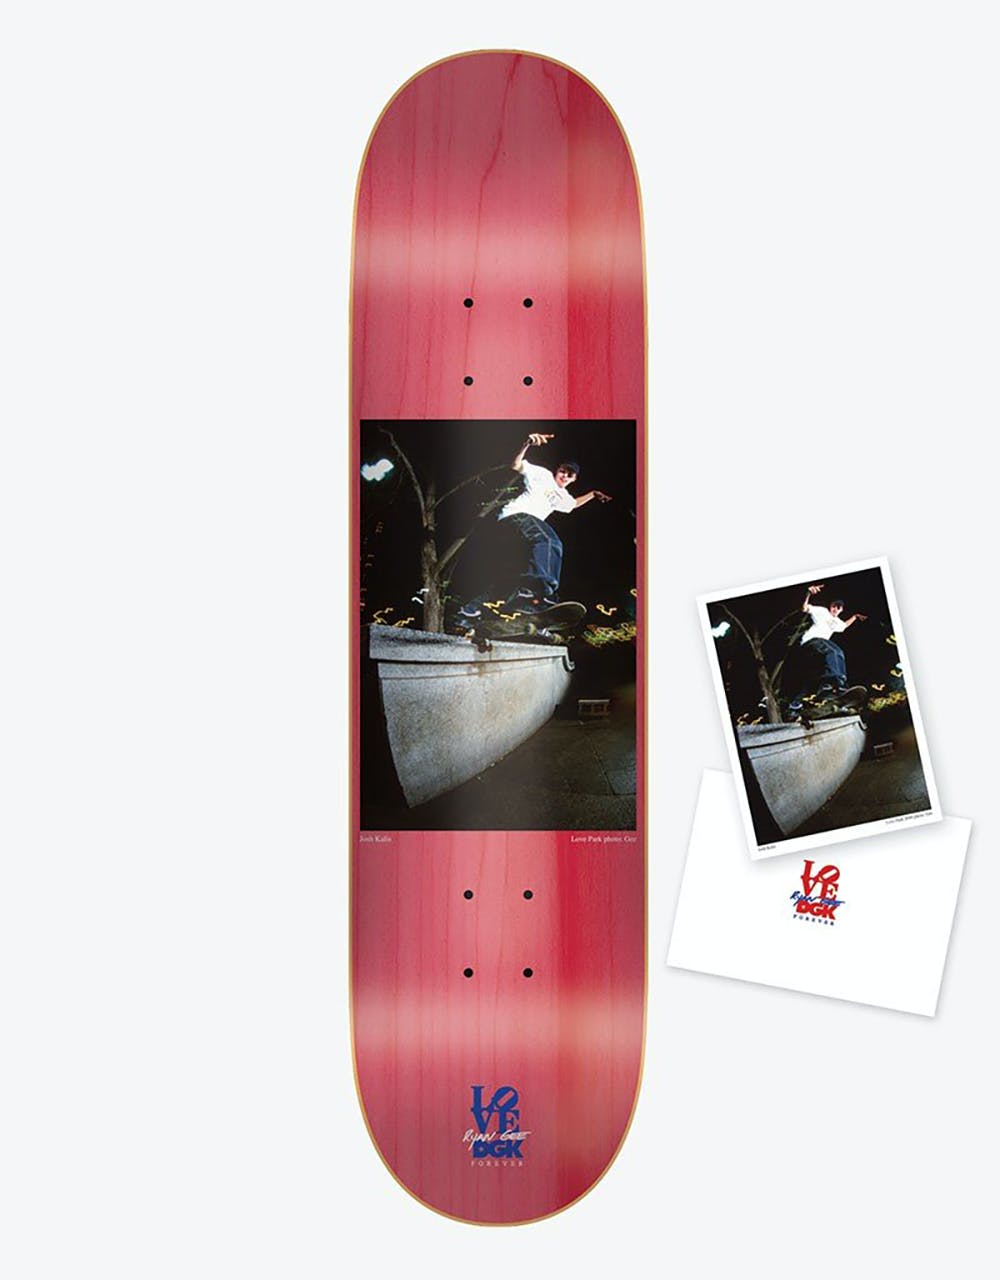 DGK x Ryan Gee Kalis Love Park Photo Ltd Skateboard Deck - 8.1"